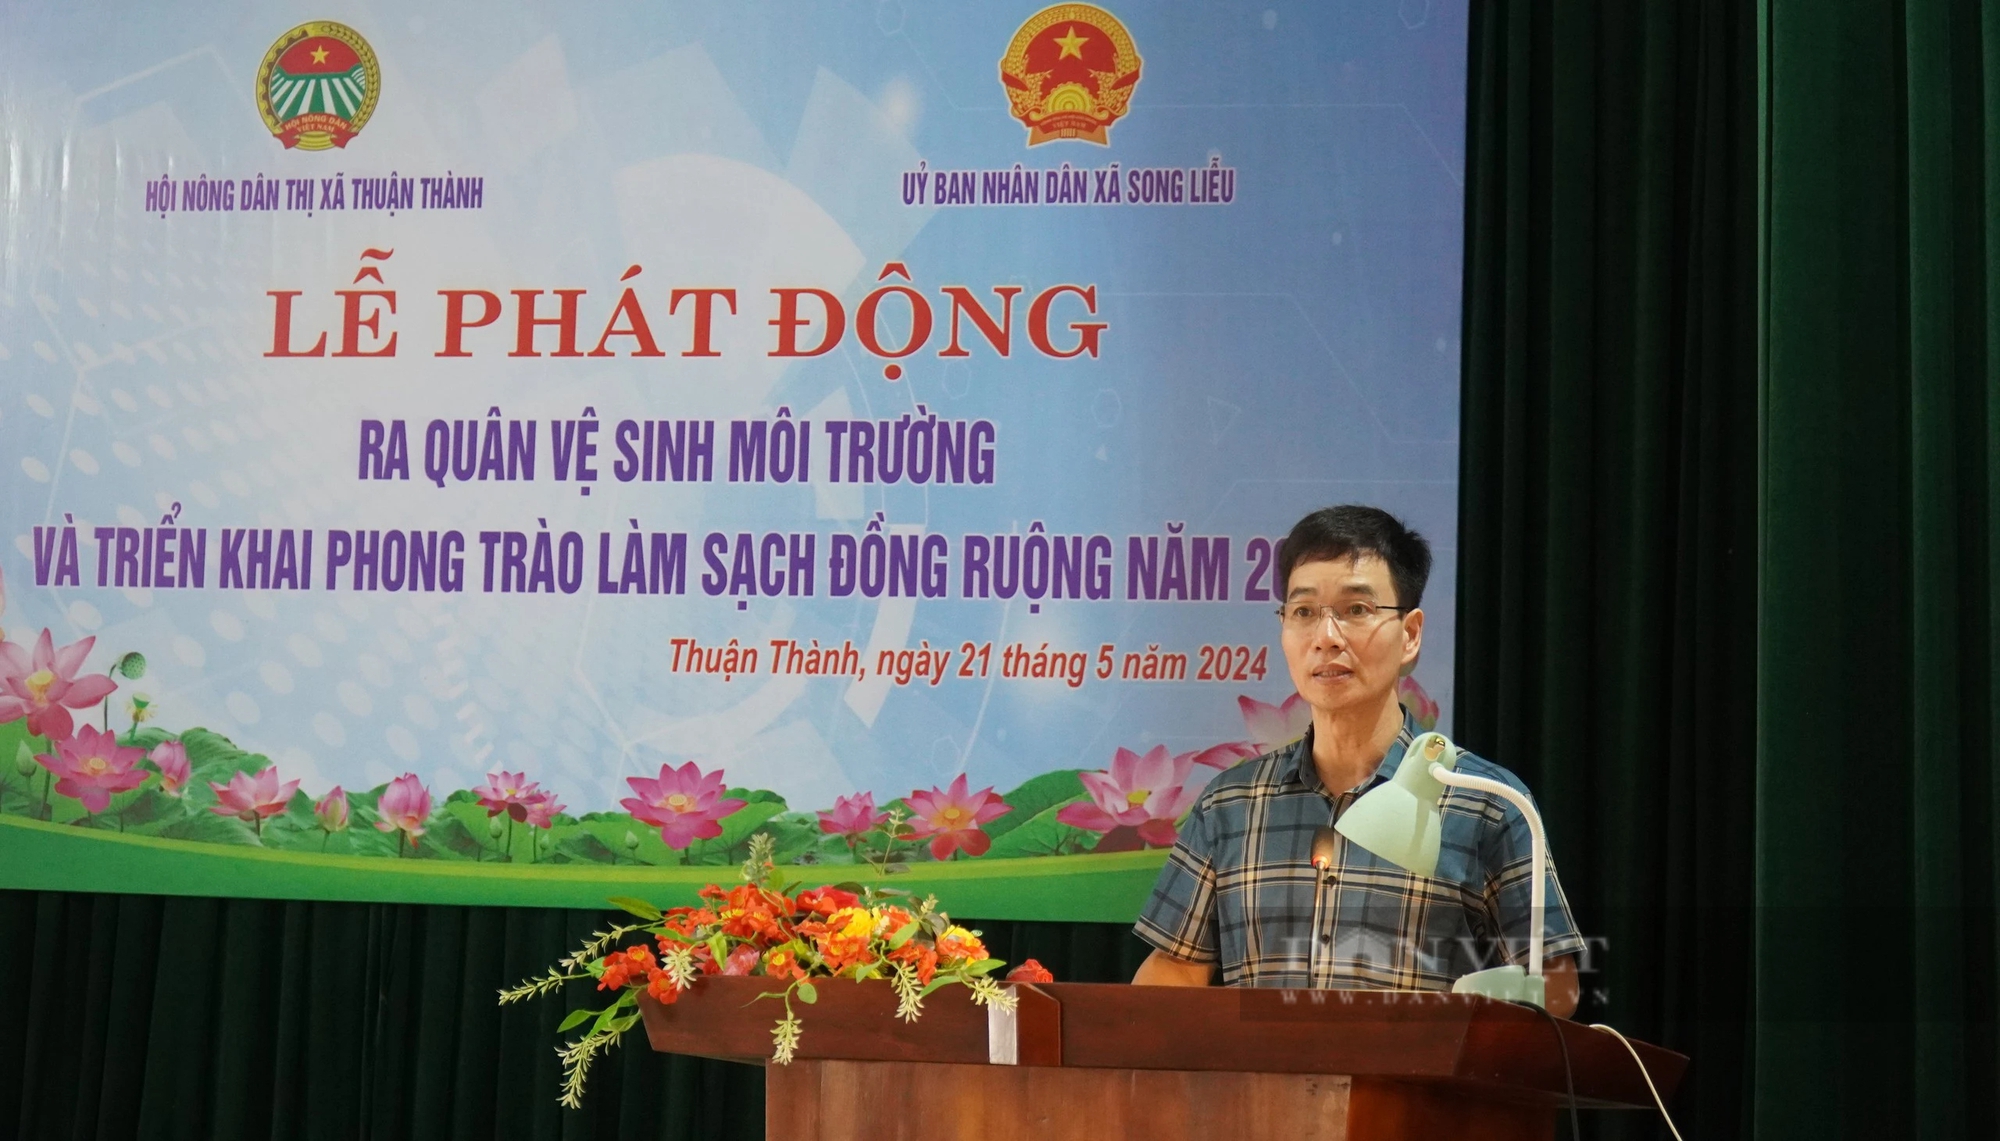 Hội Nông dân thị xã Thuận Thành (Bắc Ninh) phát động hội viên nông dân "làm sạch đồng ruộng"- Ảnh 2.